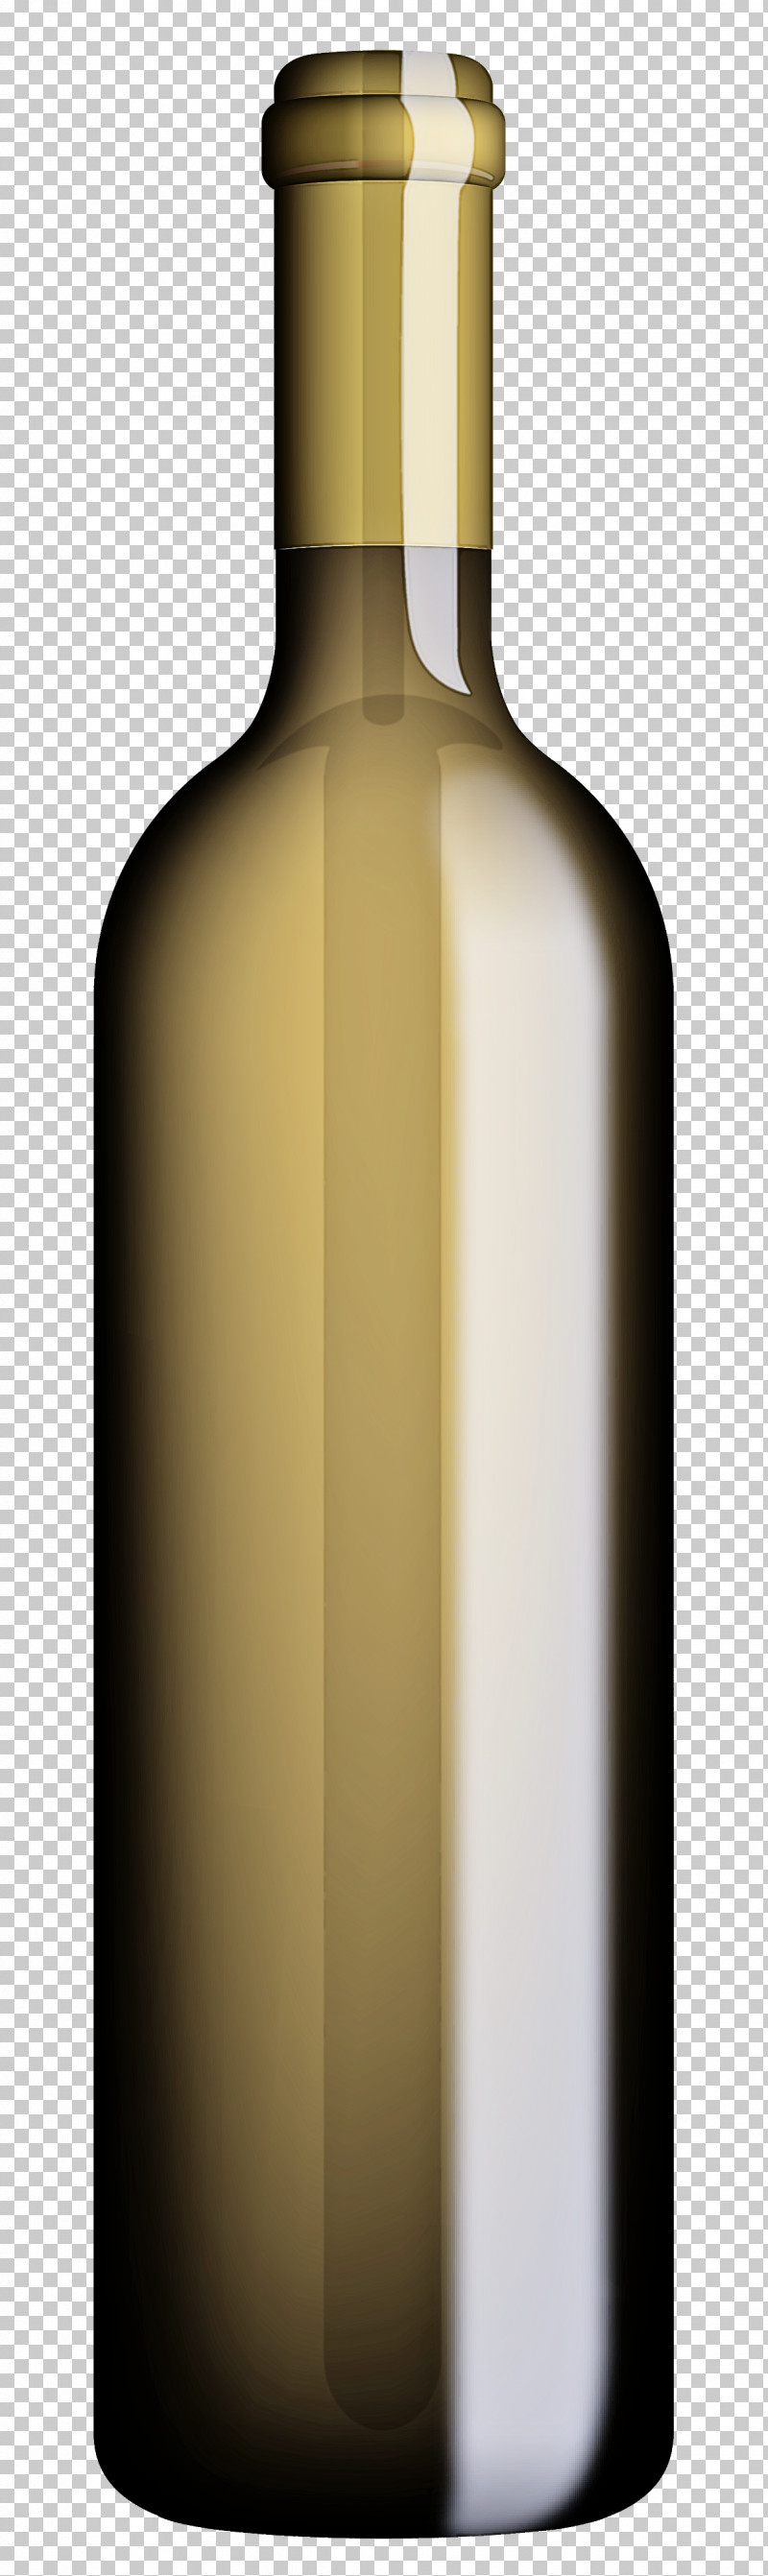 Bottle Glass Bottle Liqueur Drink Wine Bottle PNG, Clipart, Bottle, Drink, Glass Bottle, Liqueur, Wine Bottle Free PNG Download